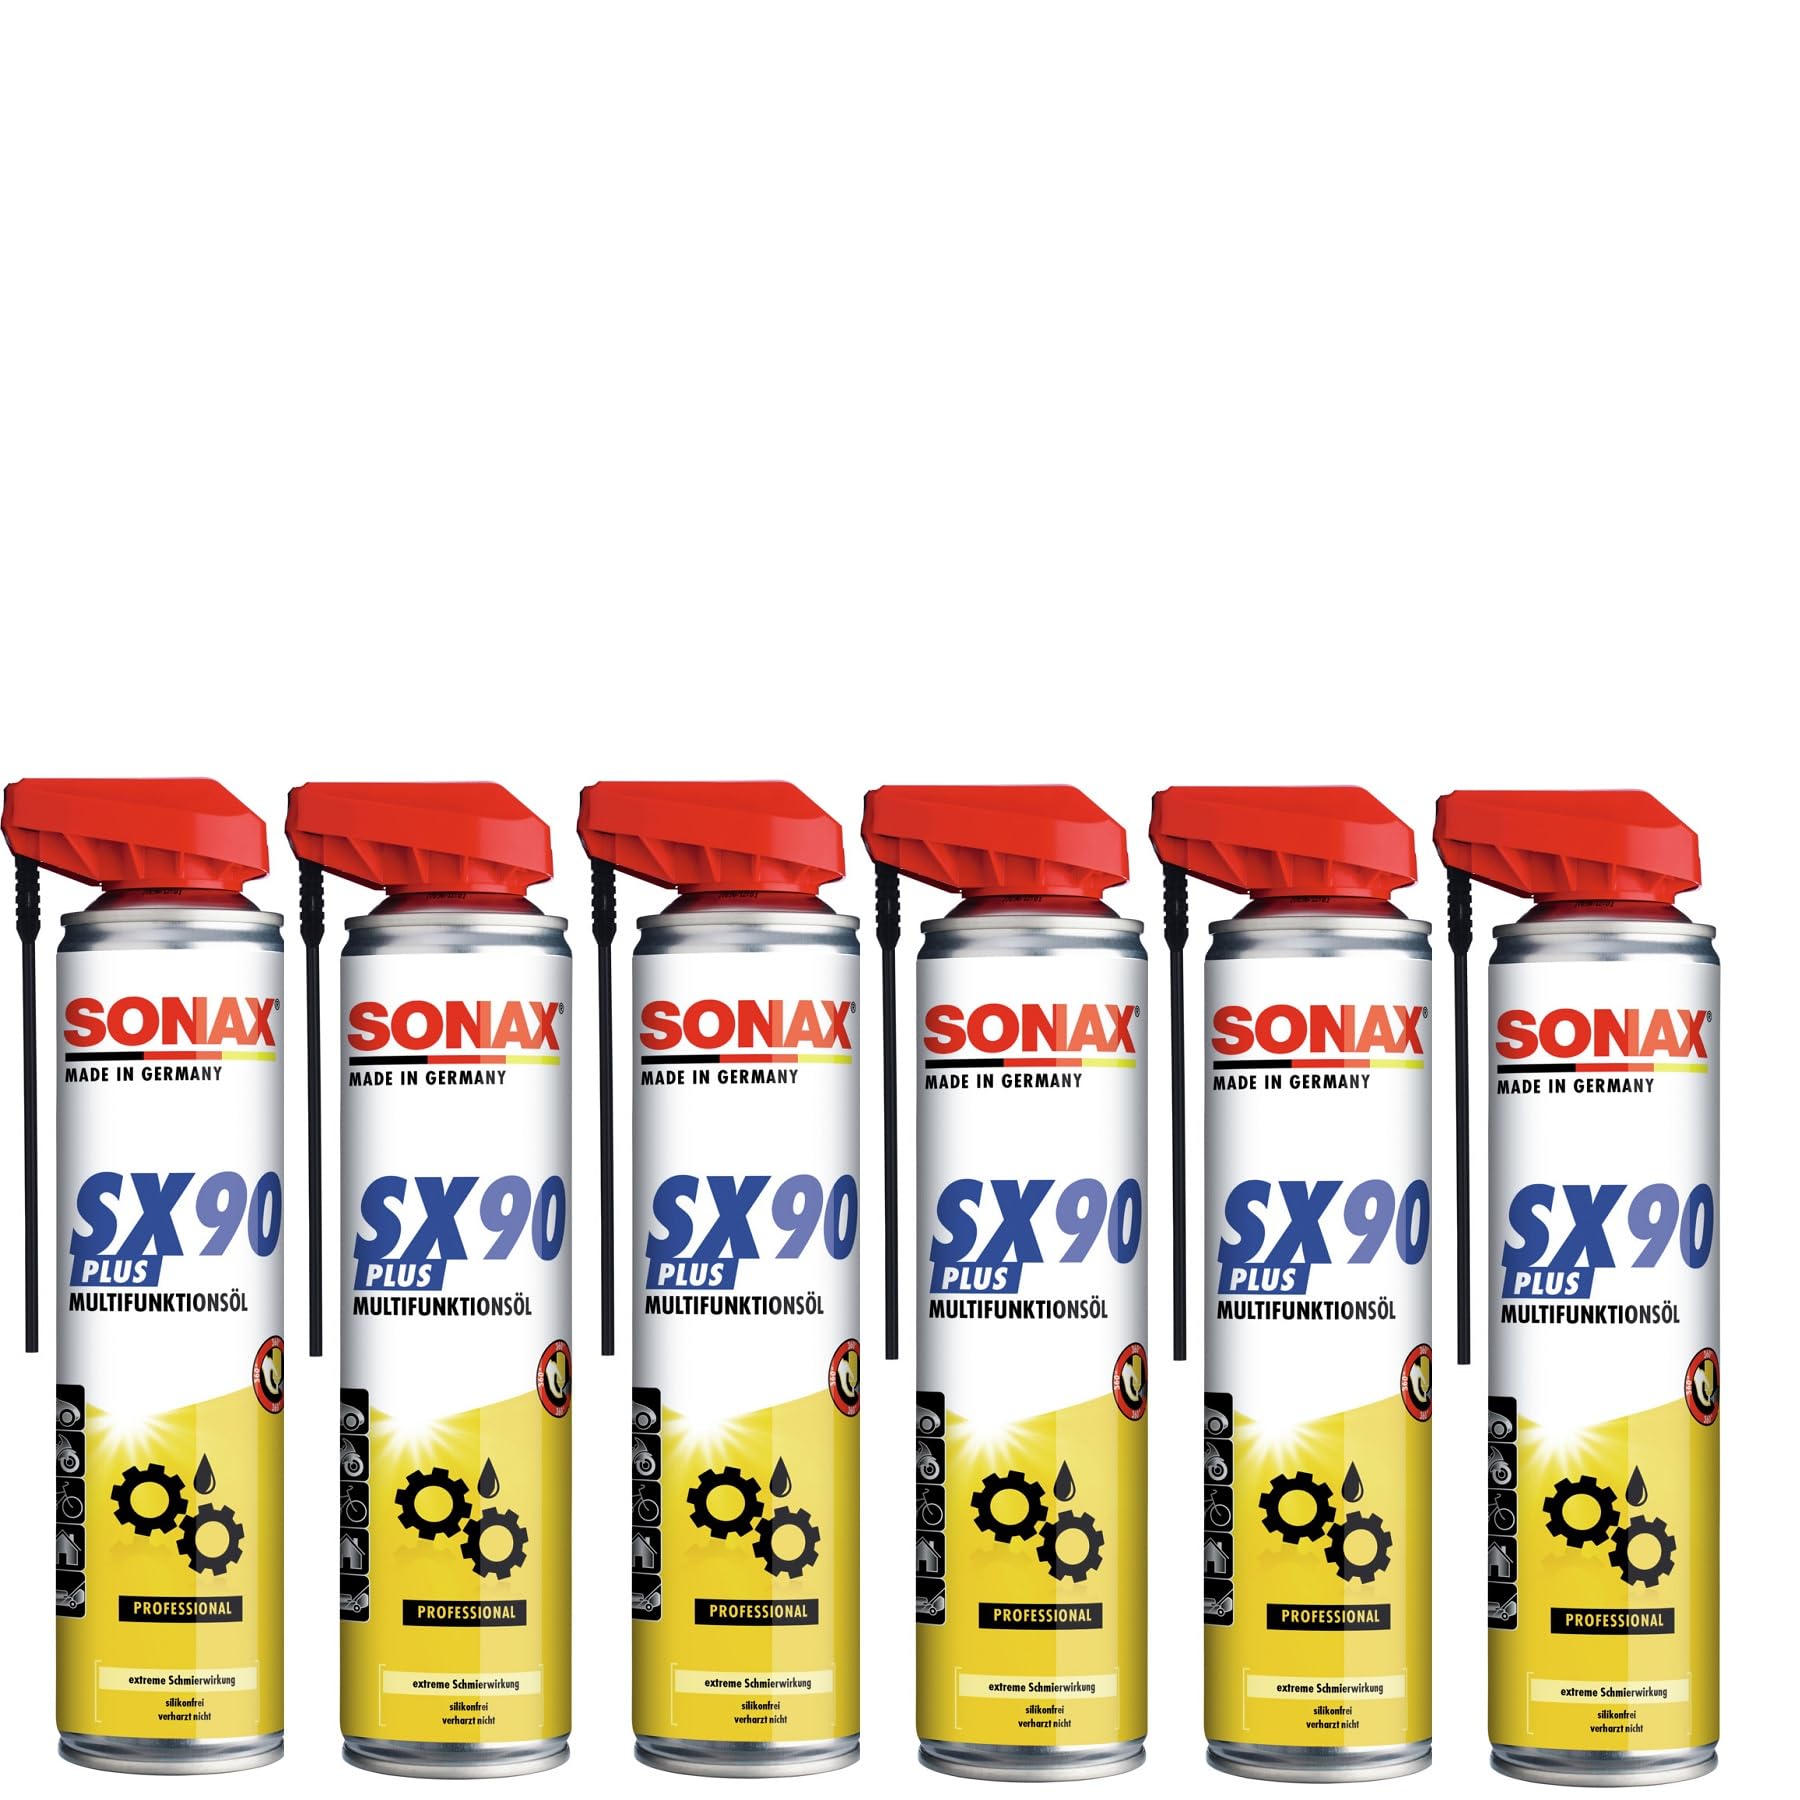 SONAX SX90 Multifunktionsöl mit EasySpray (400 ml) Multifunktionsöl für alle Zwecke wie Rostlöser, Schmiermittel, Korrosionsschutz & Kriechöl| Art-Nr. 04744001 von SONAX